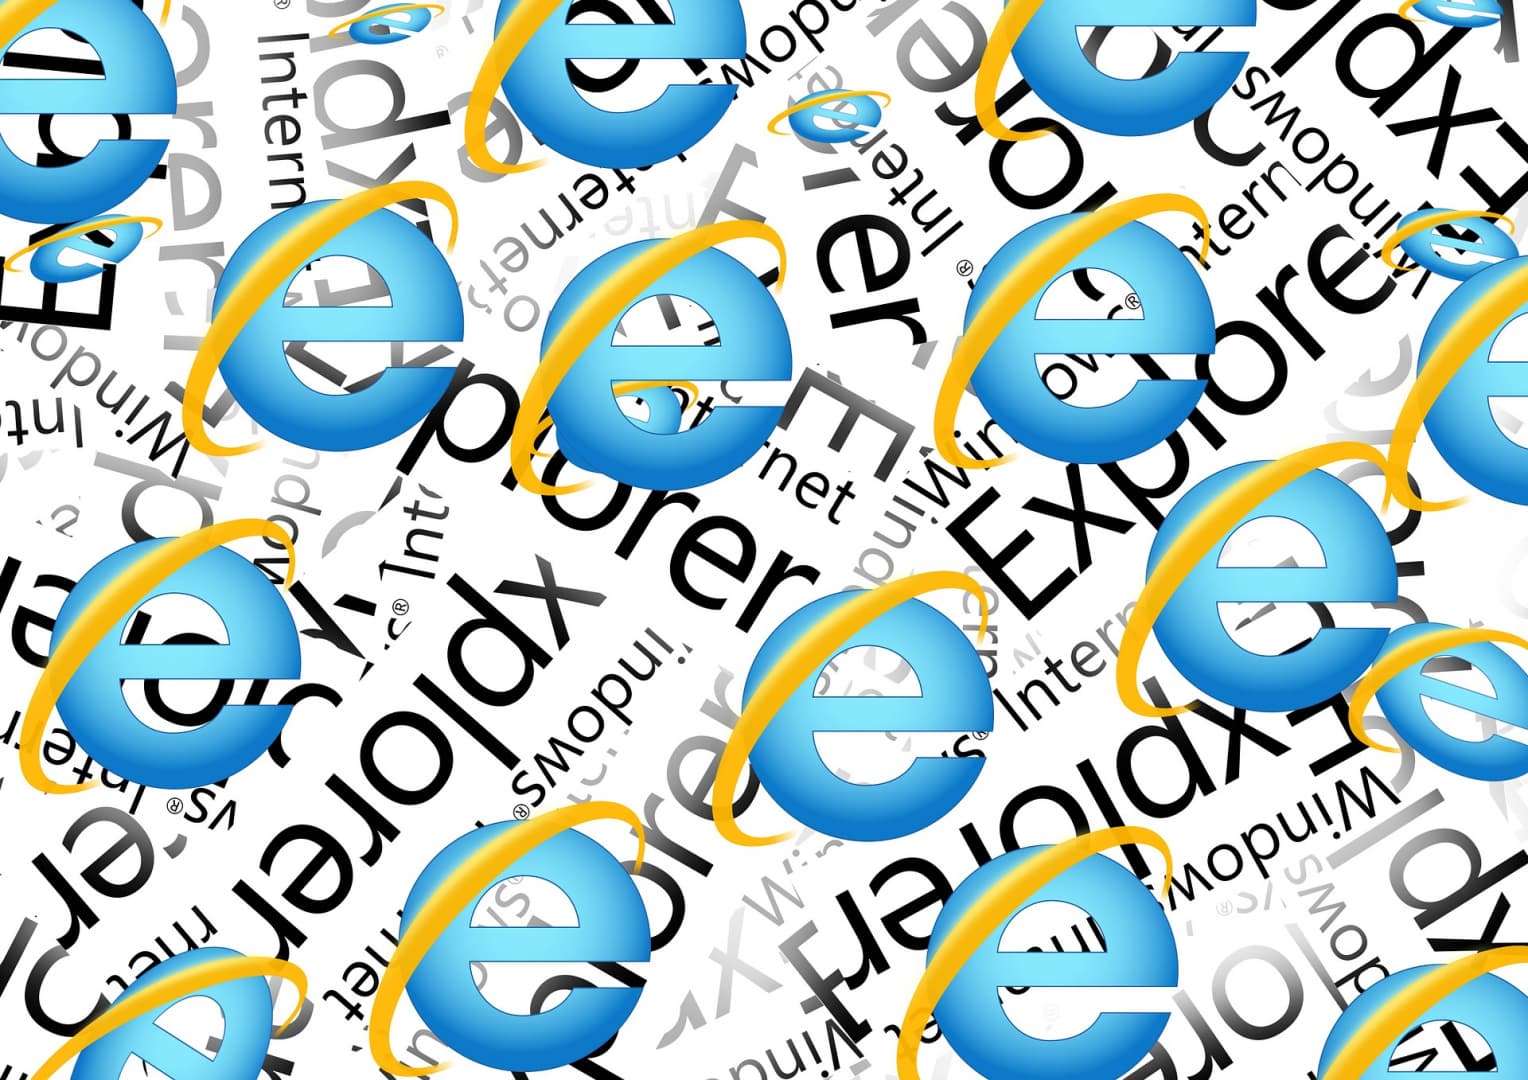 Vége egy korszaknak, szerdán megszűnik az Internet Explorer böngésző támogatása